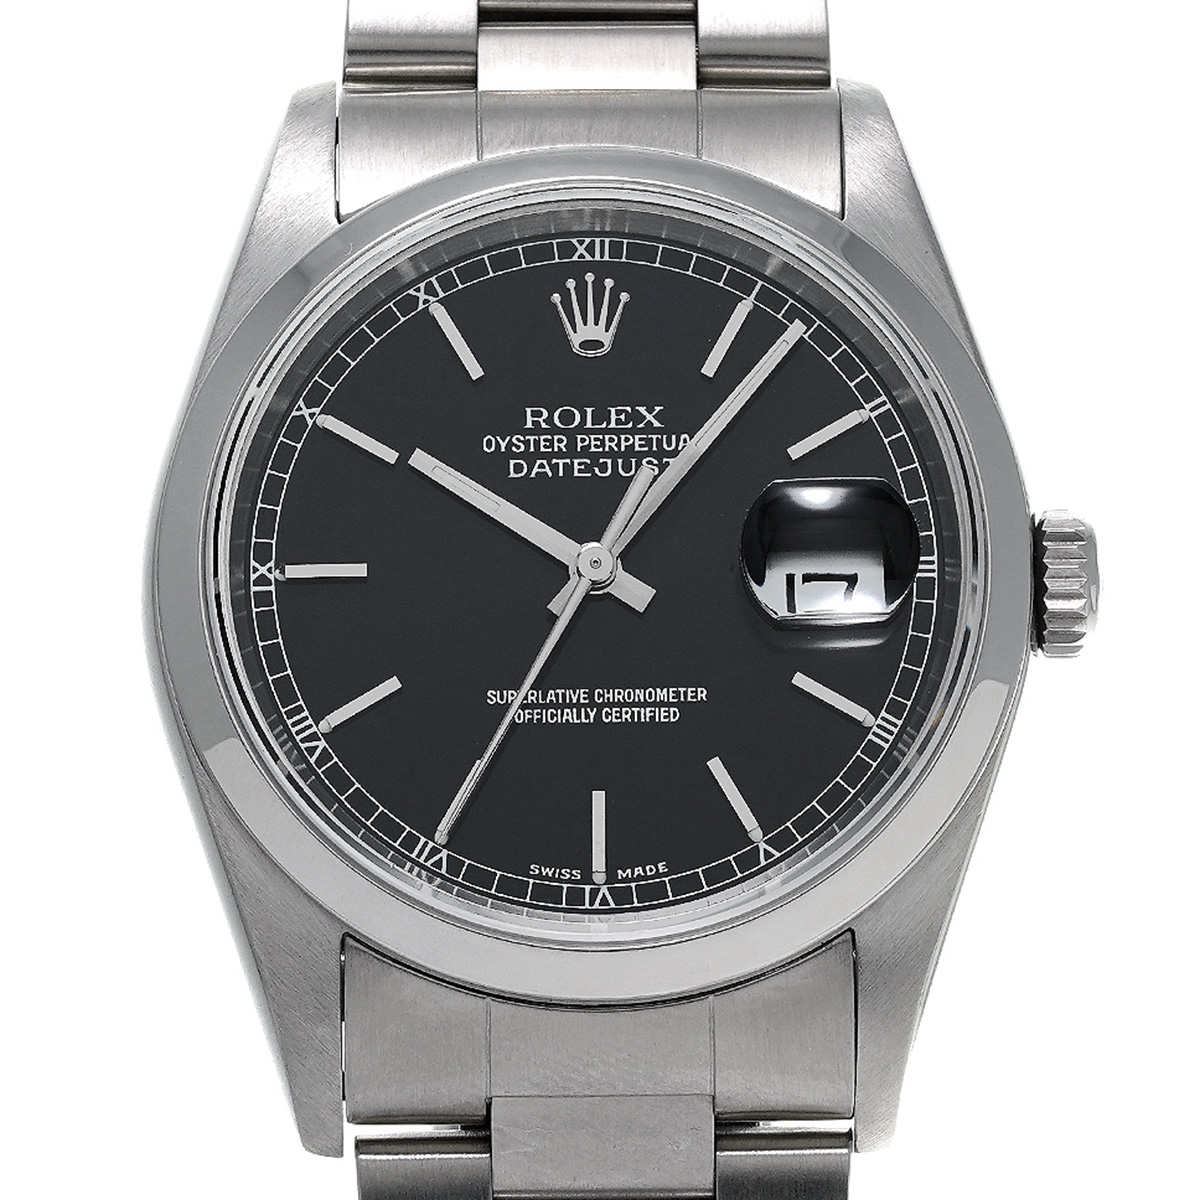 ロレックス ROLEX 16200 K番(2001年頃製造) ブラック メンズ 腕時計